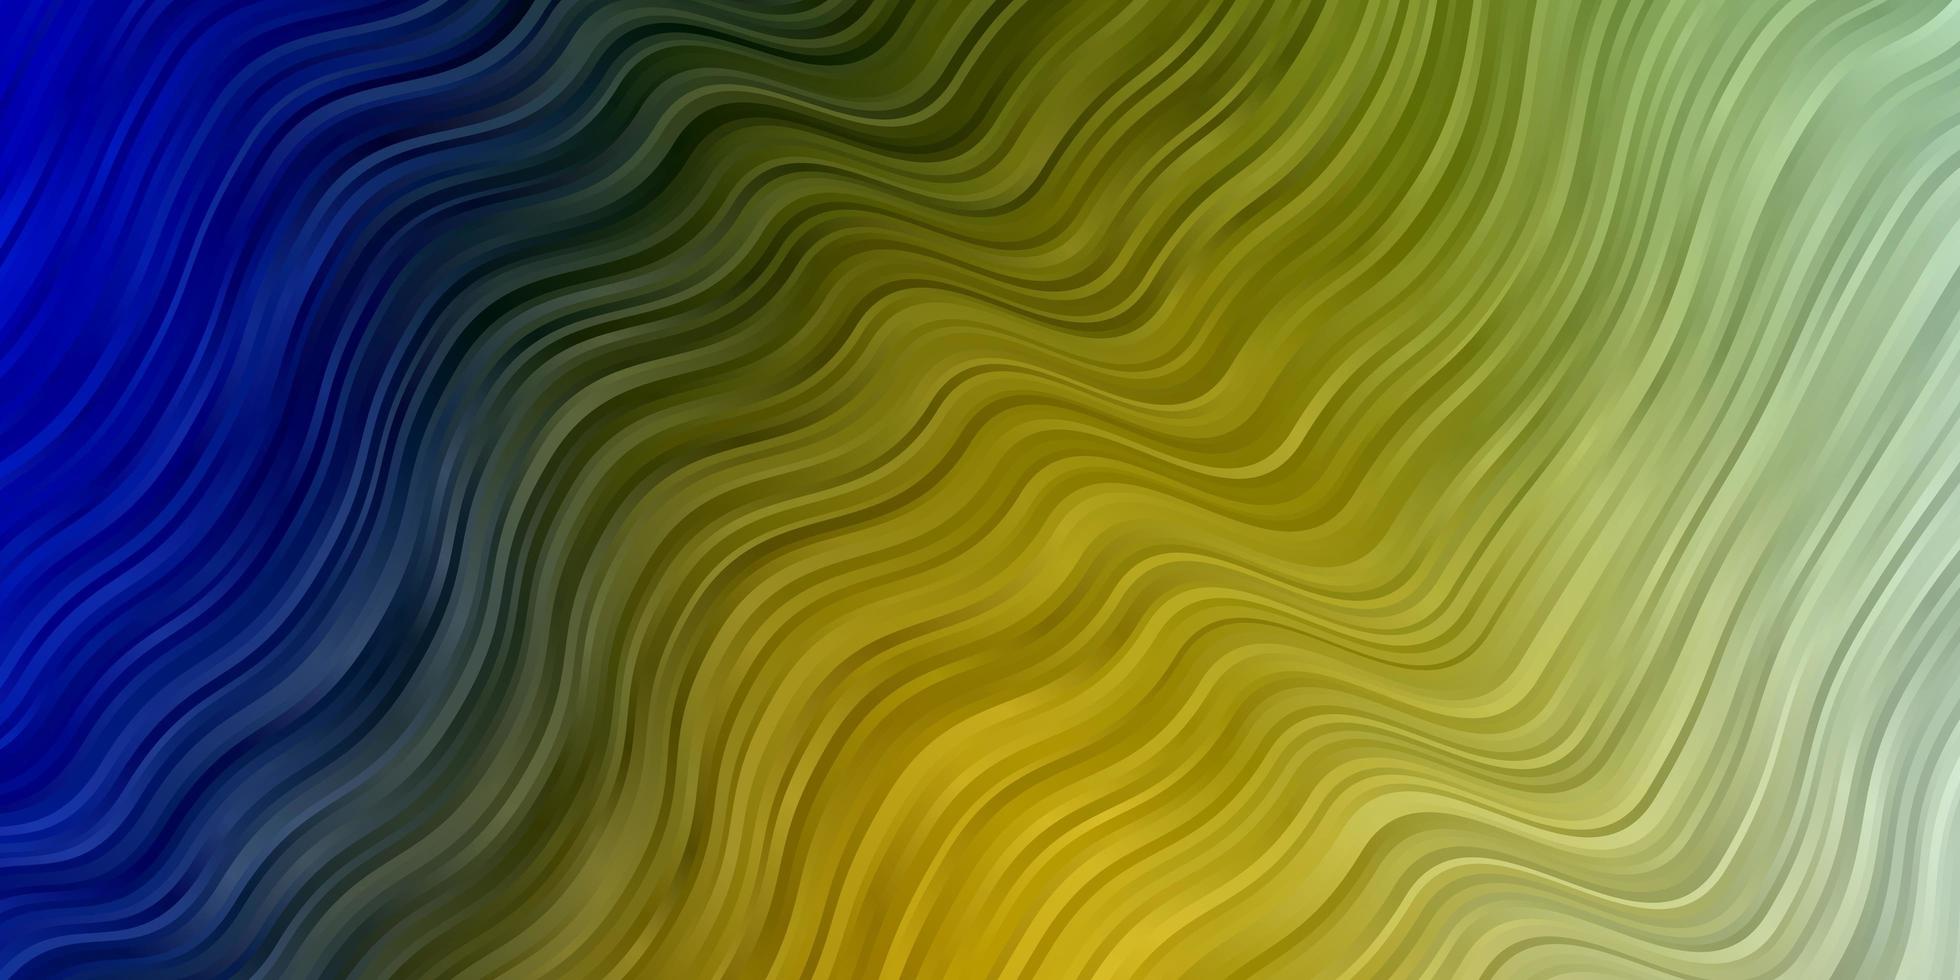 lichtblauwe, gele vectorachtergrond met wrange lijnen. abstracte gradiëntillustratie met wrange lijnen. patroon voor zakelijke boekjes, folders vector